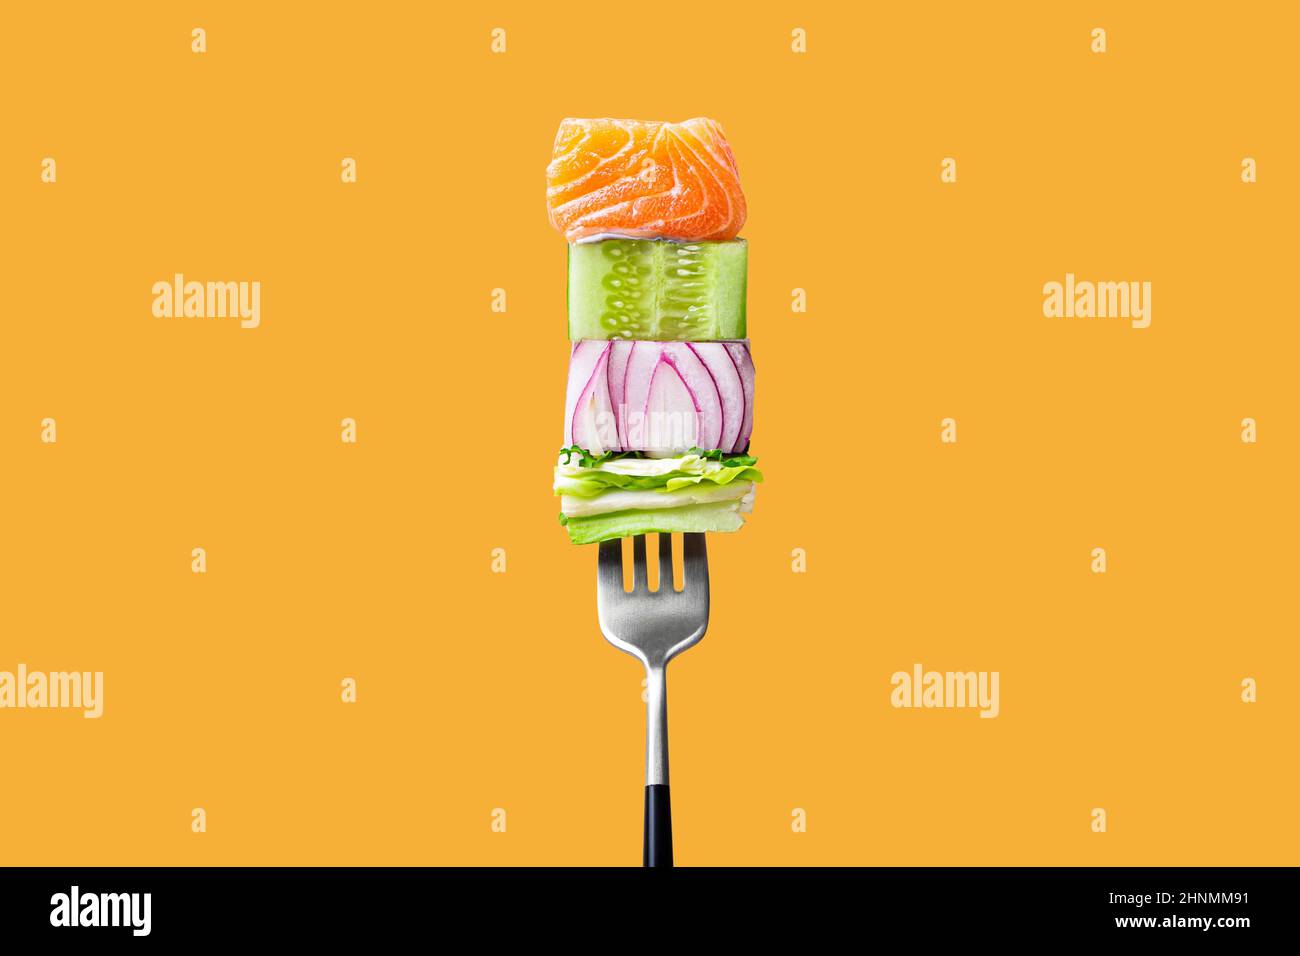 fourchette avec nourriture sur elle: délicieux filet de saumon, concombre, oignon, salade verte sur fond orange Banque D'Images